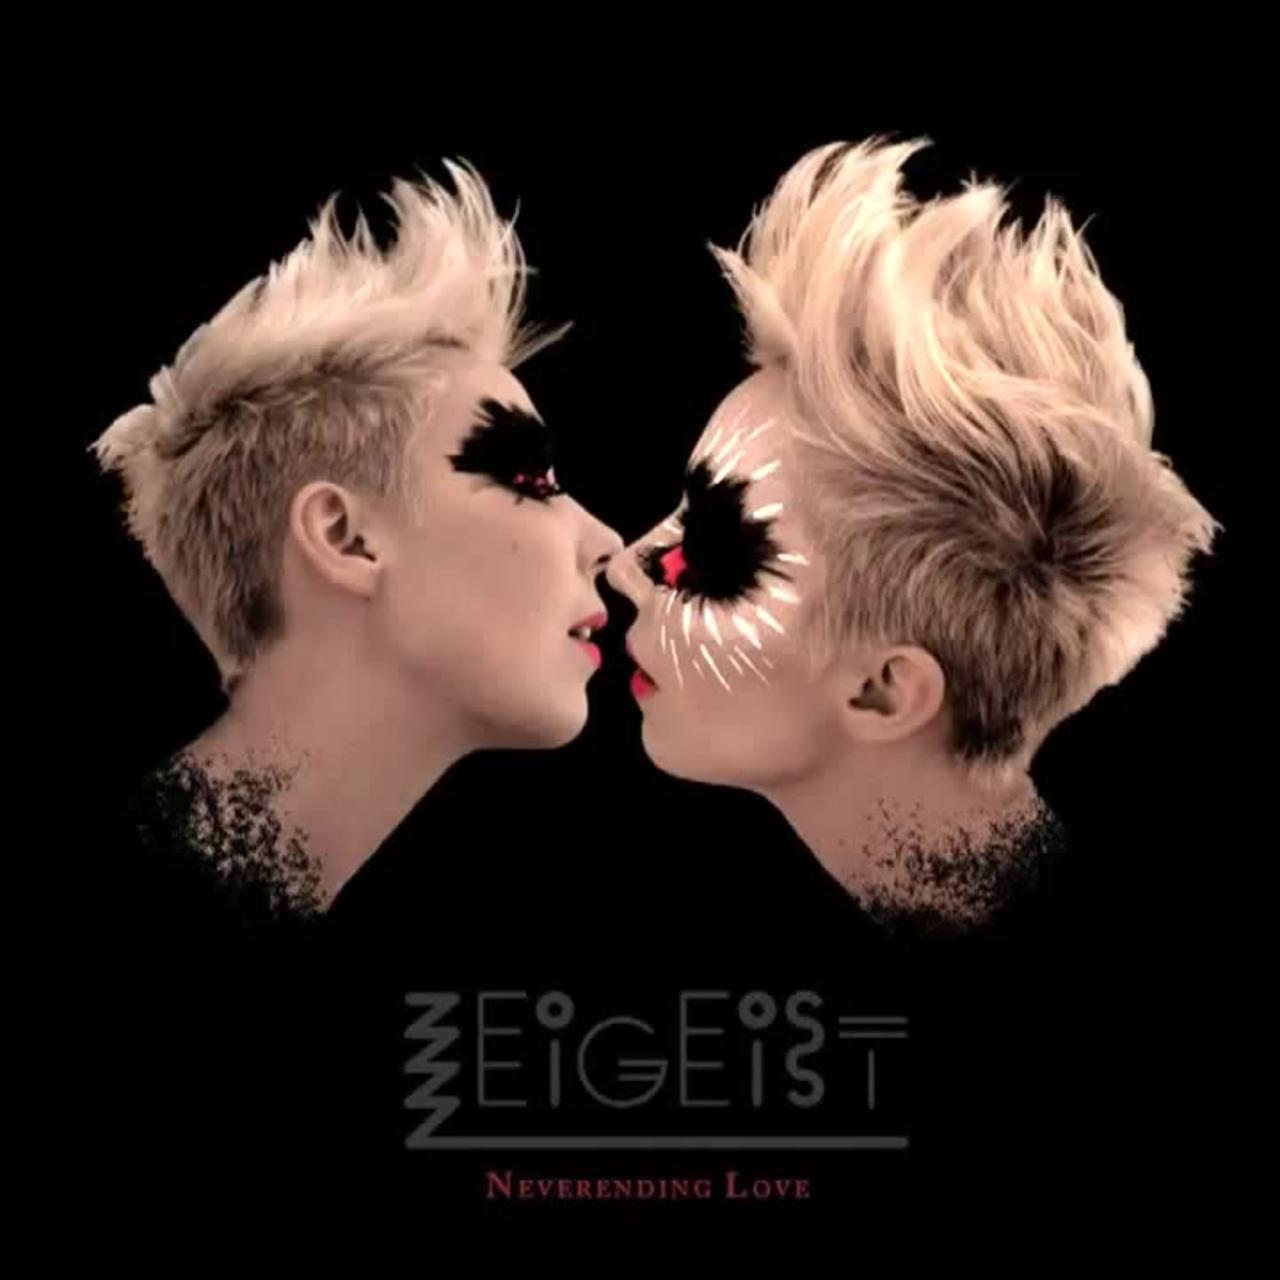 Zeigeist - Neverending Love (Roxette Cover)